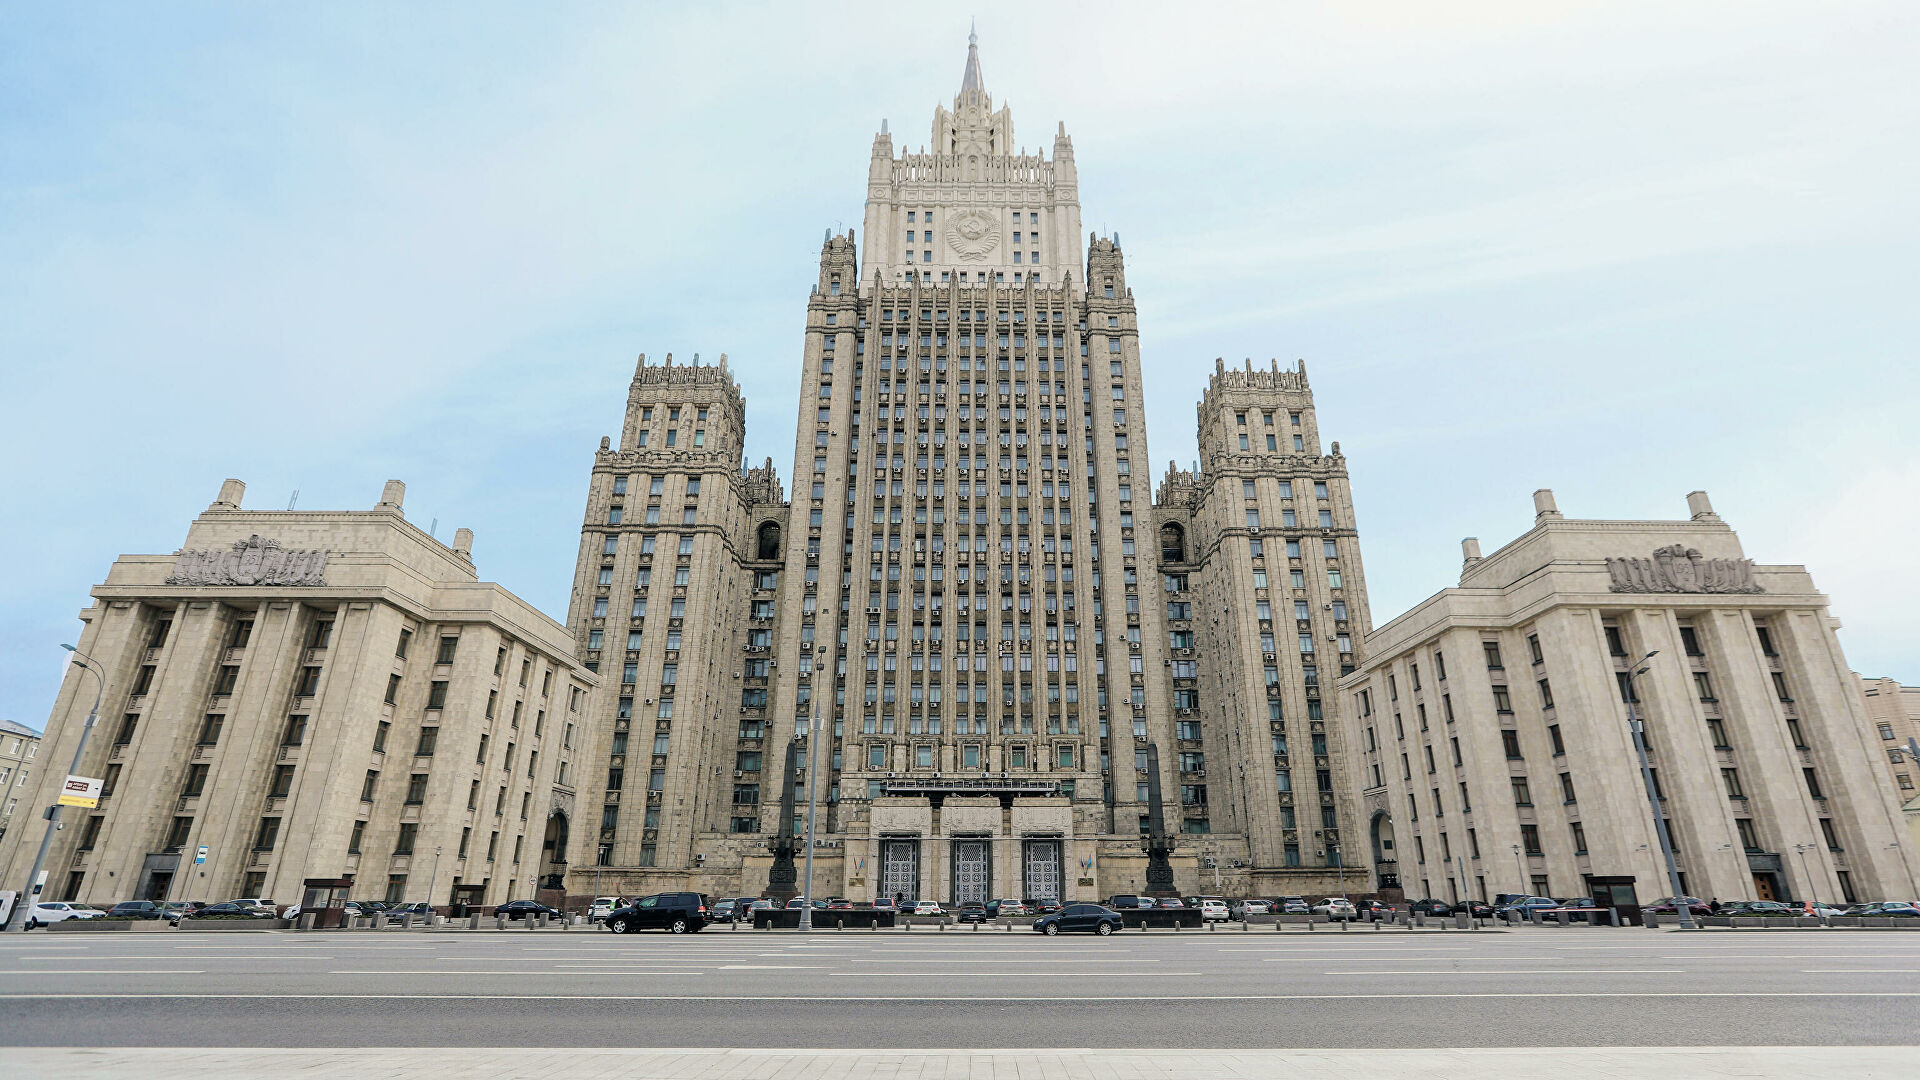 Ռուսաստանը ստացել է ԱՄՆ-ի և ՆԱՏՕ-ի պատասխանը անվտանգության երաշխիքների վերաբերյալ Մոսկվայի առաջարկներին